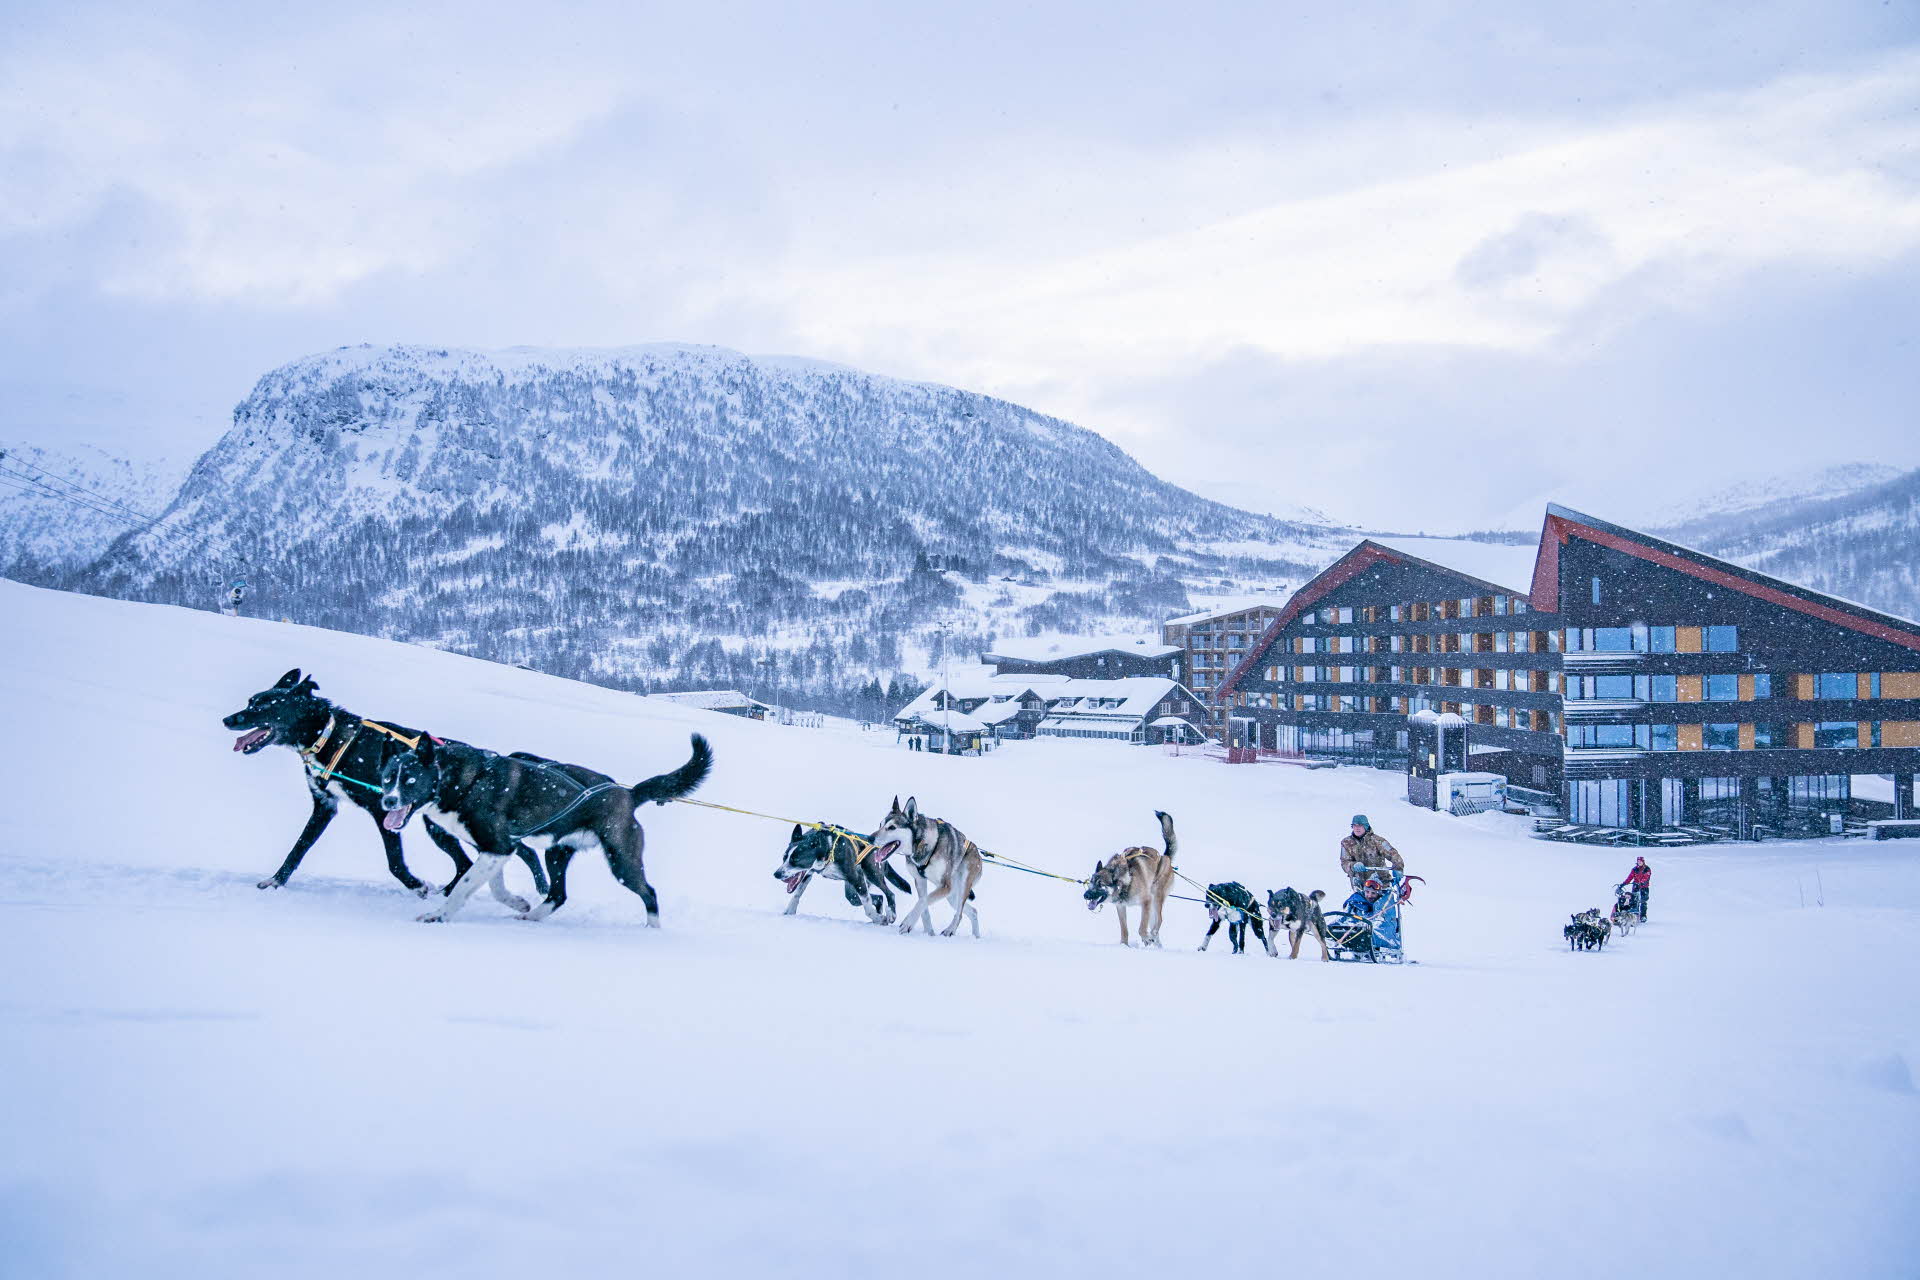 Des chiens husky tirent un traîneau vers le haut d’une colline depuis le Myrkdalen Hotel. On voit des montagnes couvertes de neige à l’arrière-plan.